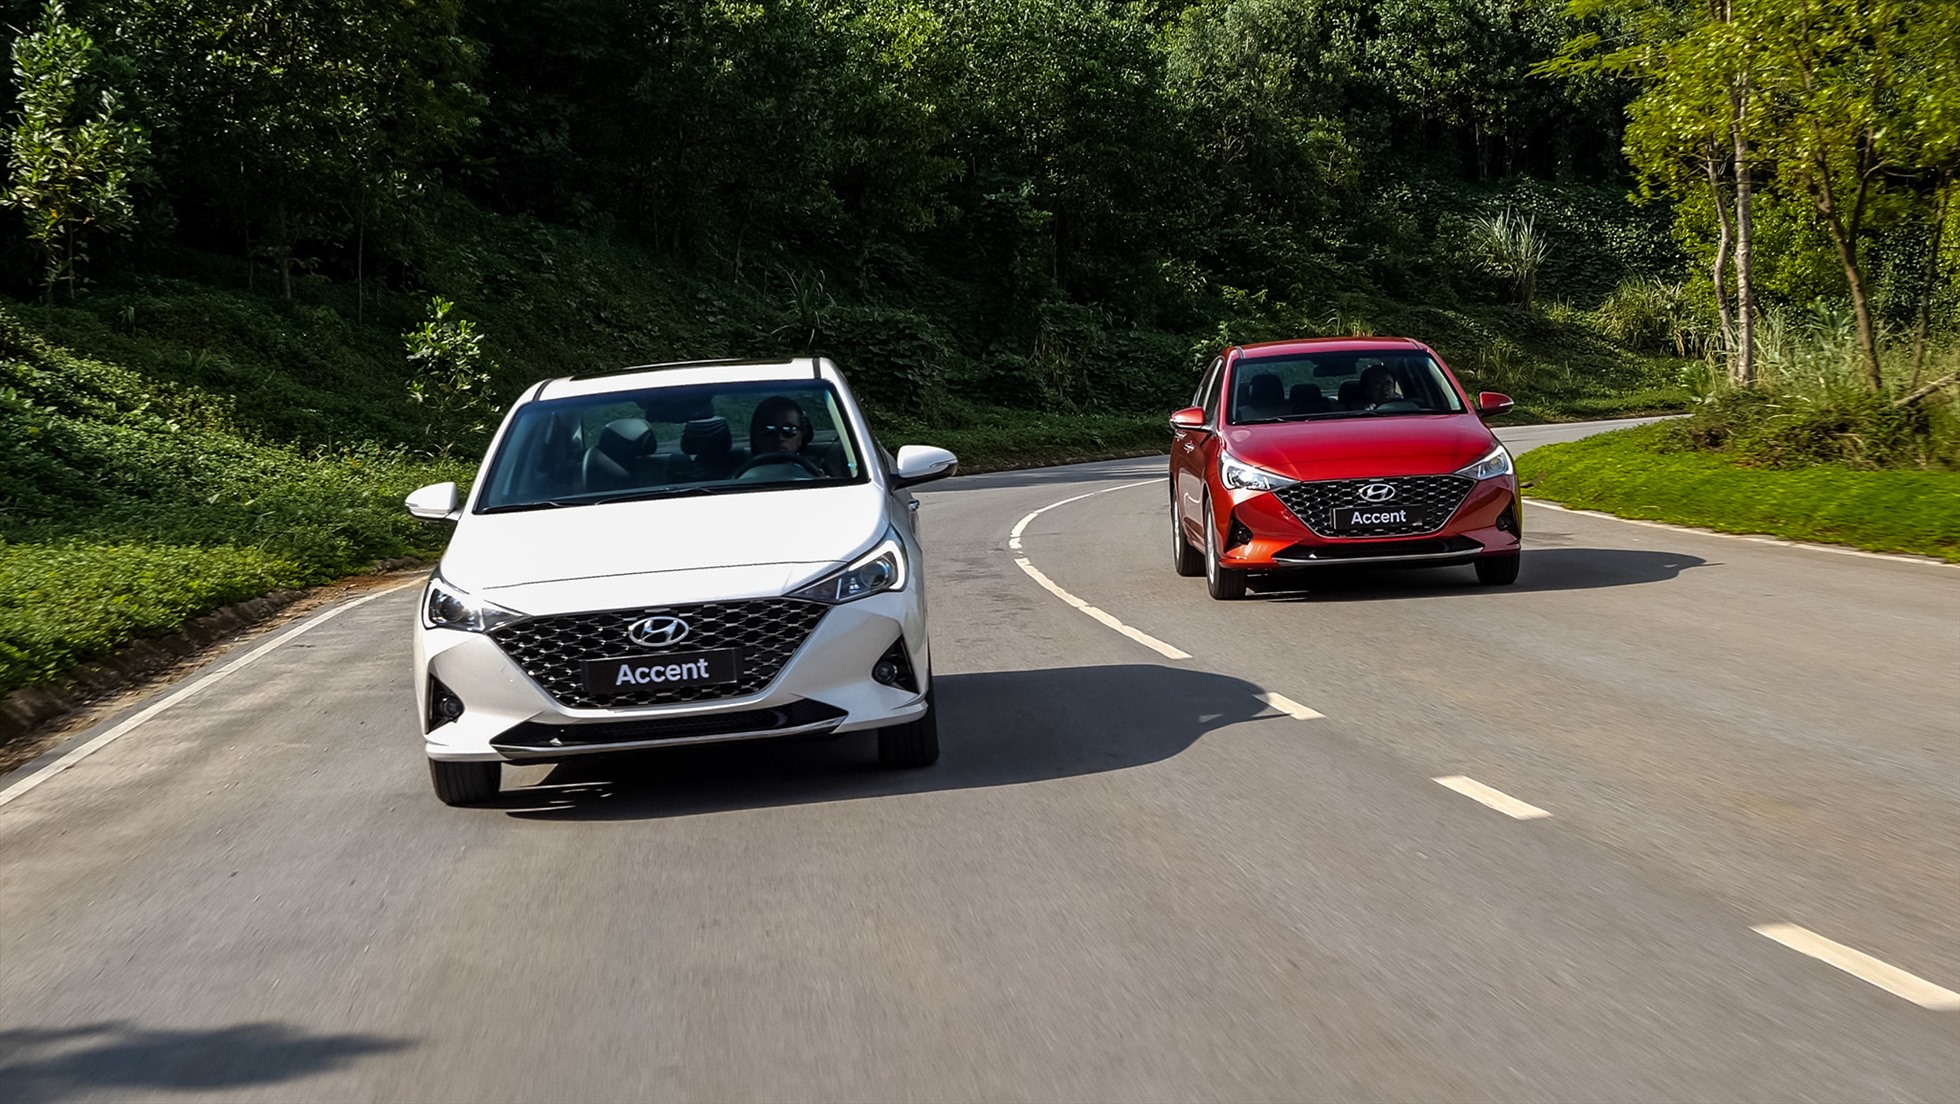 Mẫu xe ăn khách nhất thị trường hồi tháng 2 - Hyundai Accent đã sụt giảm doanh số trong tháng 3 và doanh số chỉ đứng vị trí thứ 4 toàn thị trường. Ảnh: TC Motor.